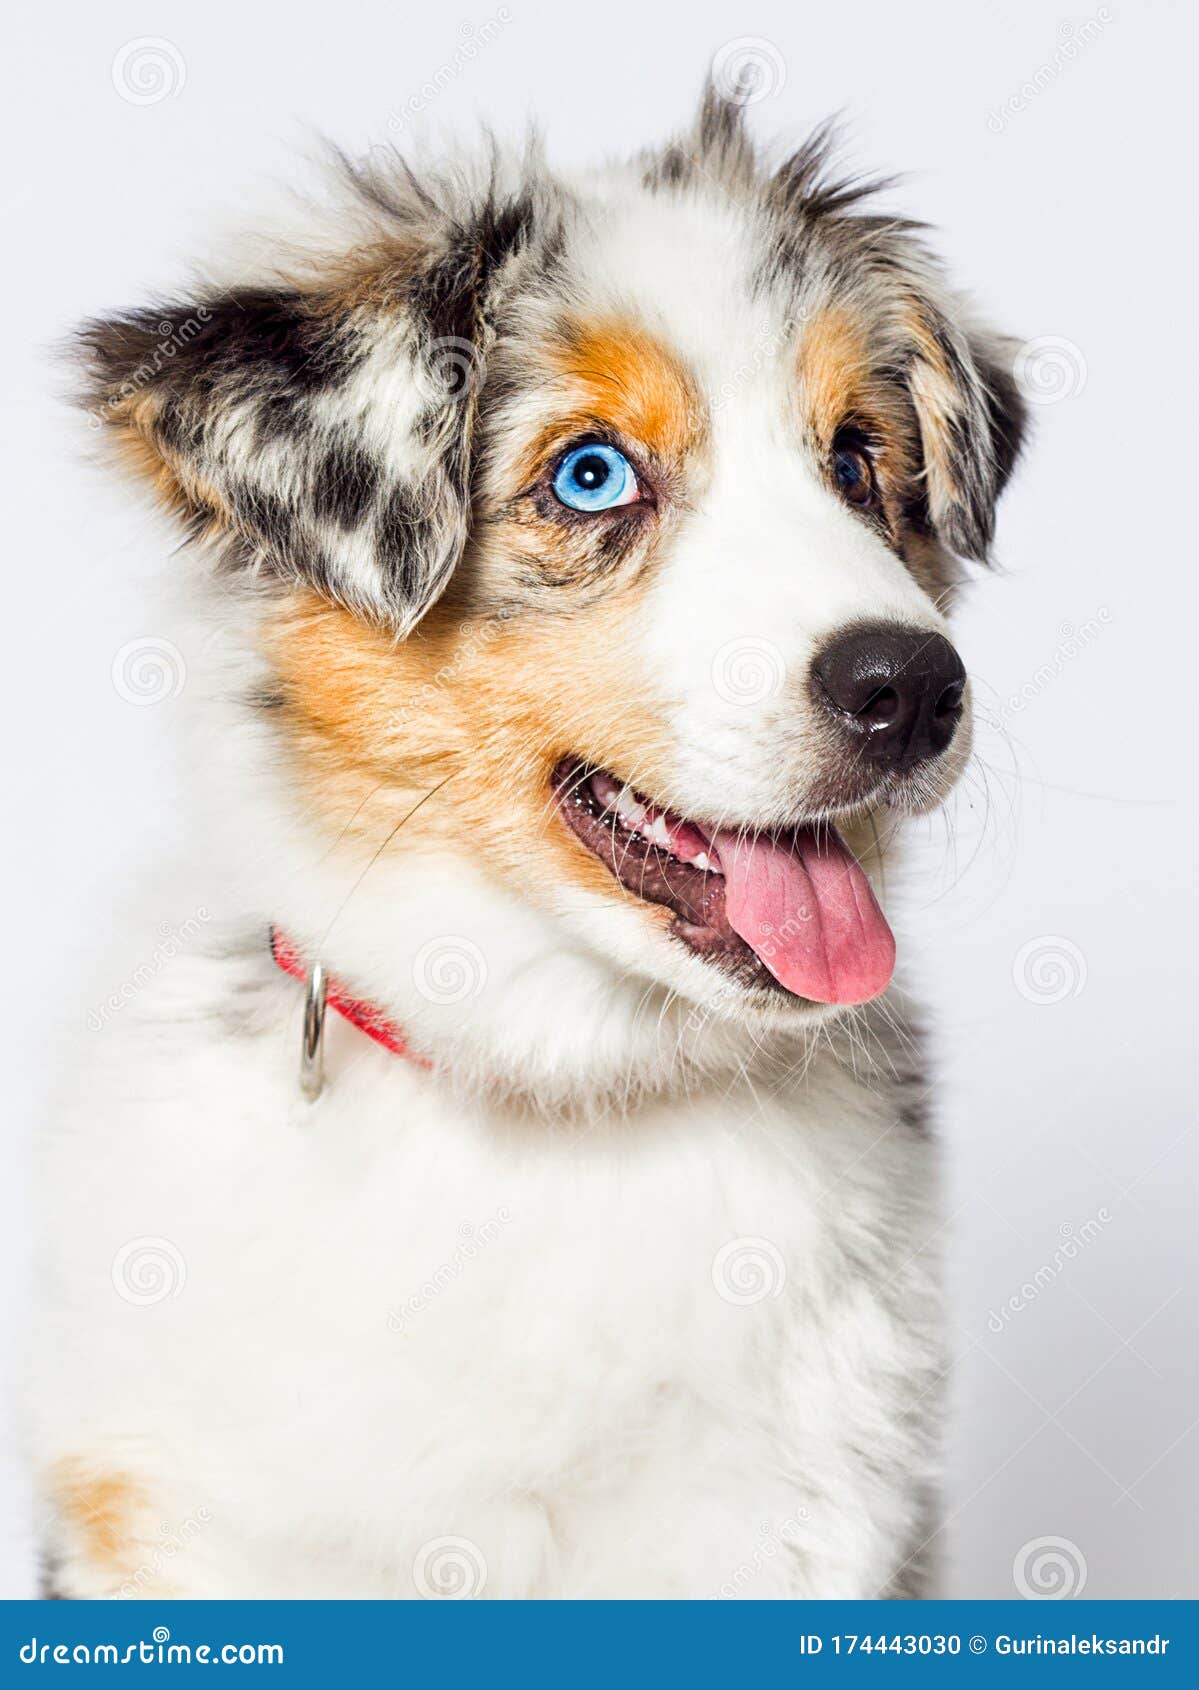 Blue Eyed Merle Puppy Australian Shepherd Dog Stock Photo Image Of White Canine 174443030